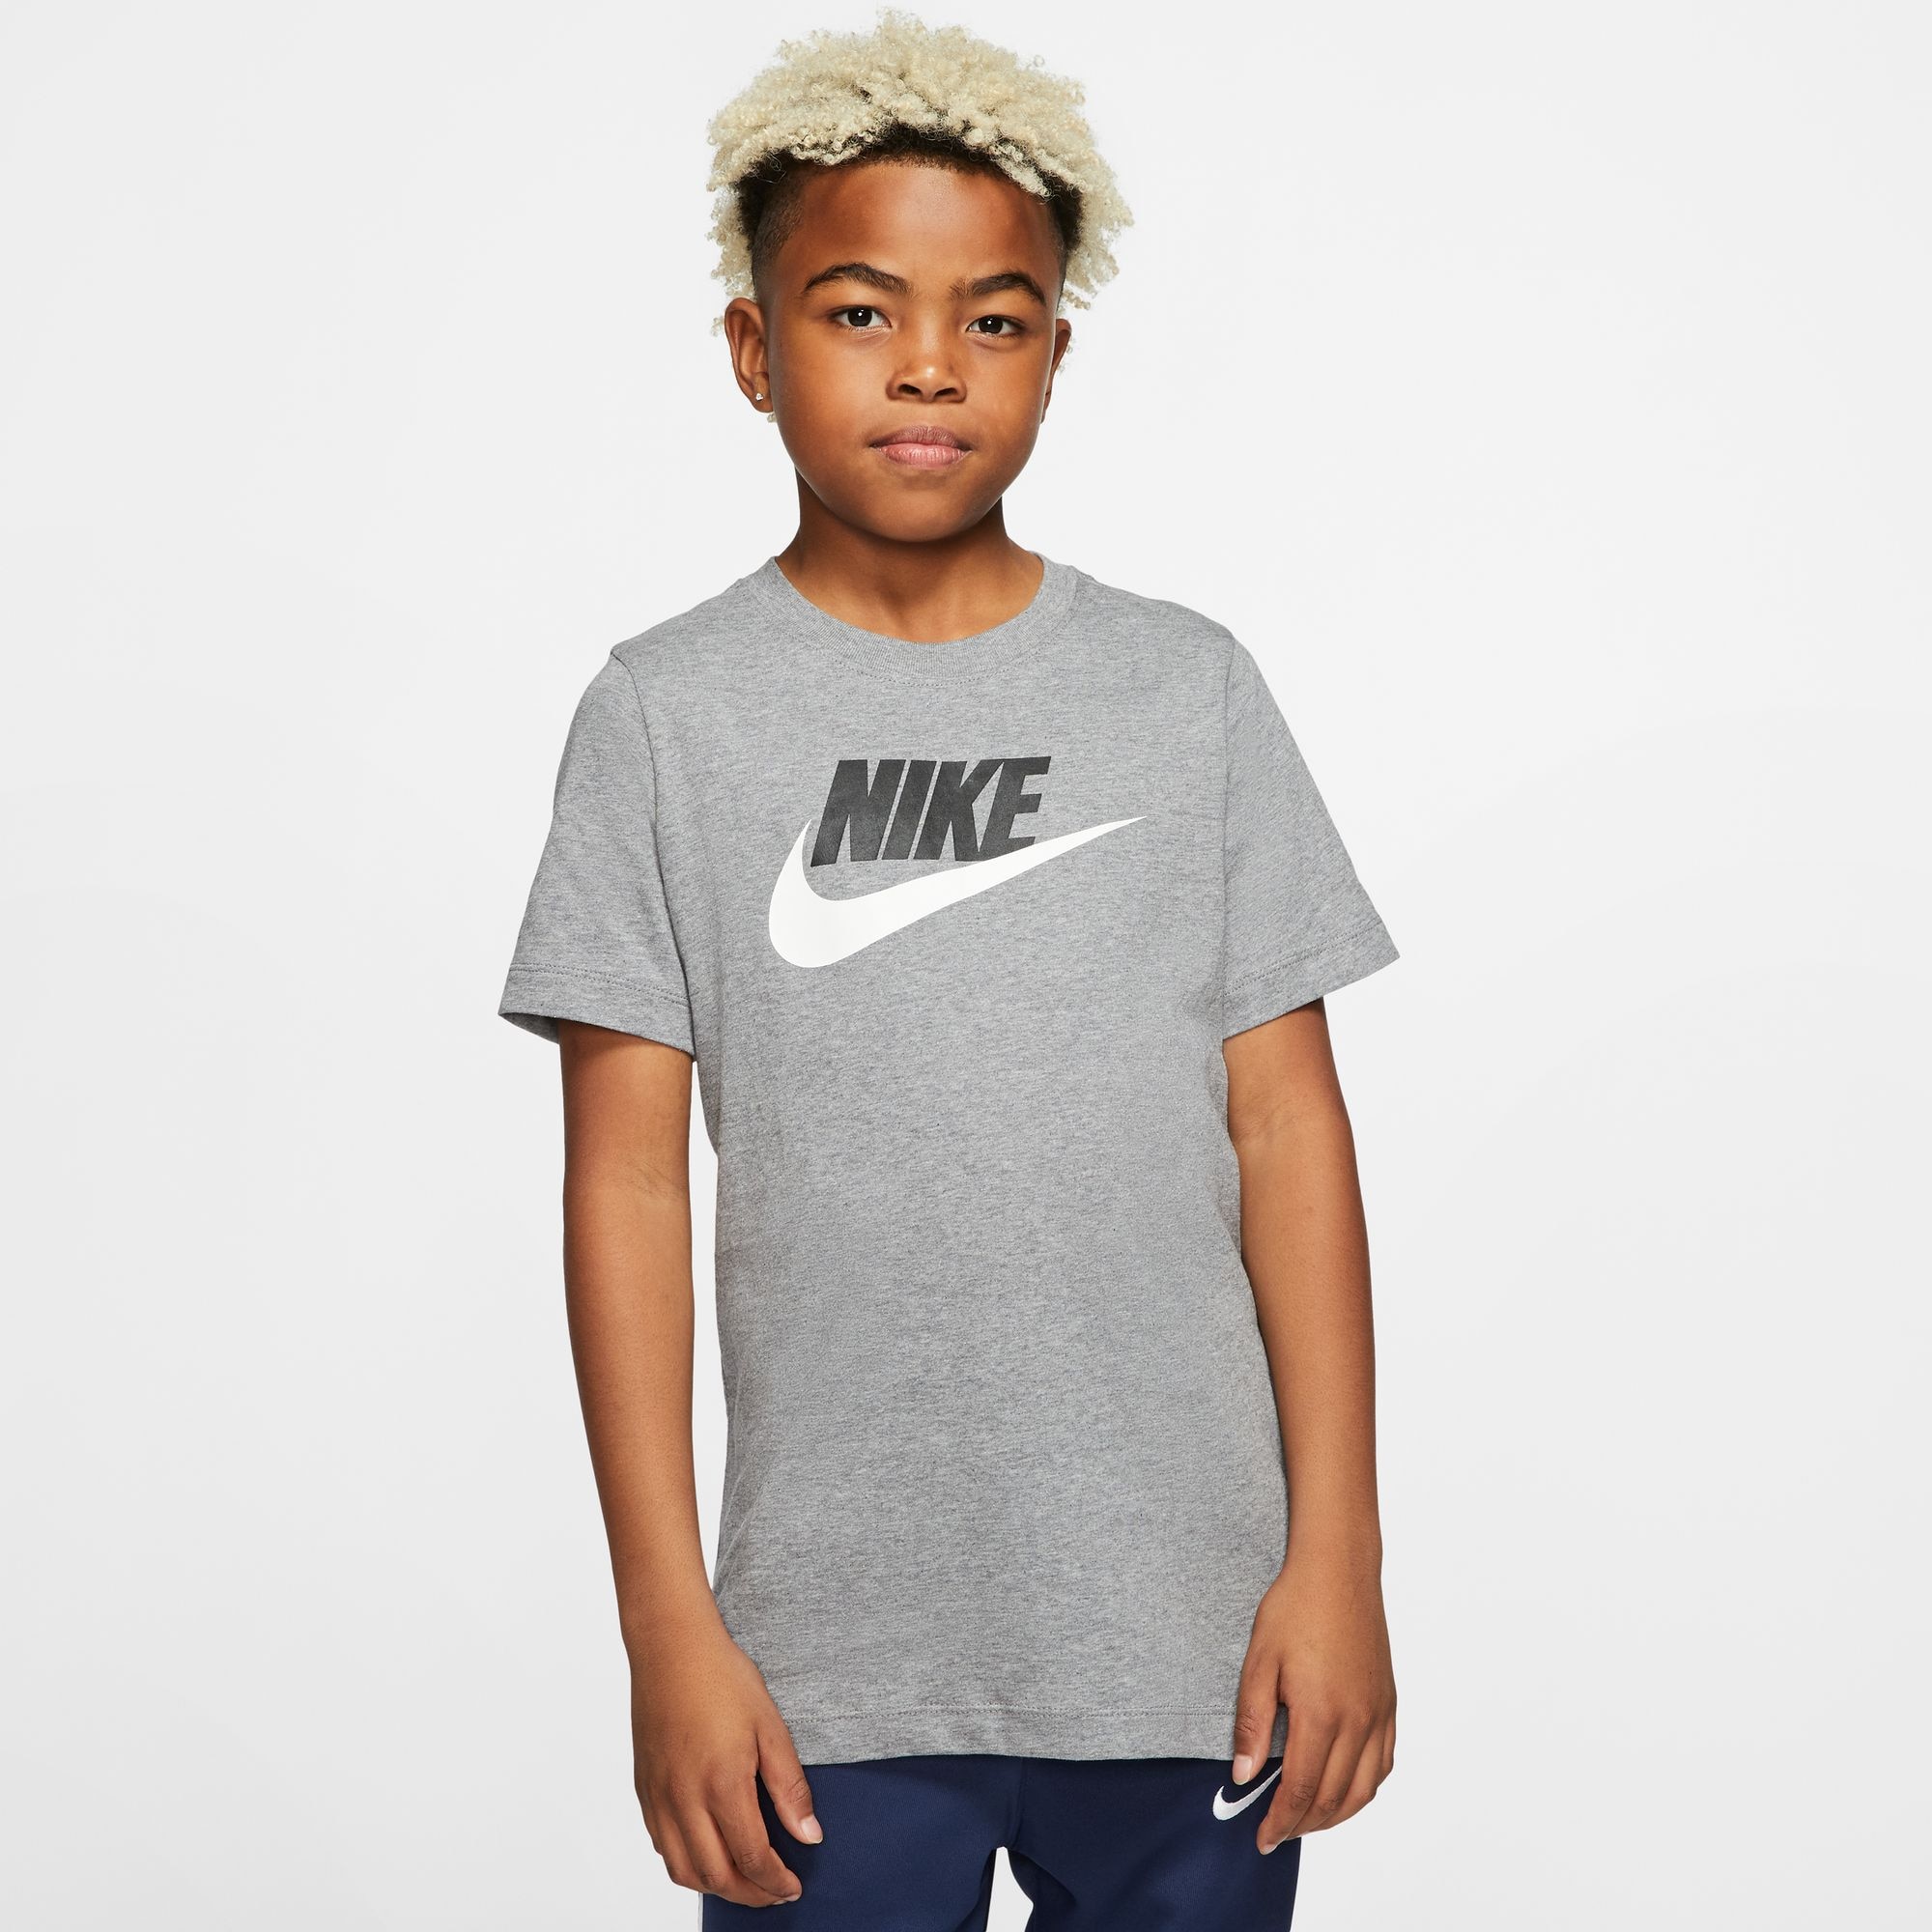 ♕ T-SHIRT« Nike COTTON KIDS\' Sportswear T-Shirt »BIG versandkostenfrei auf